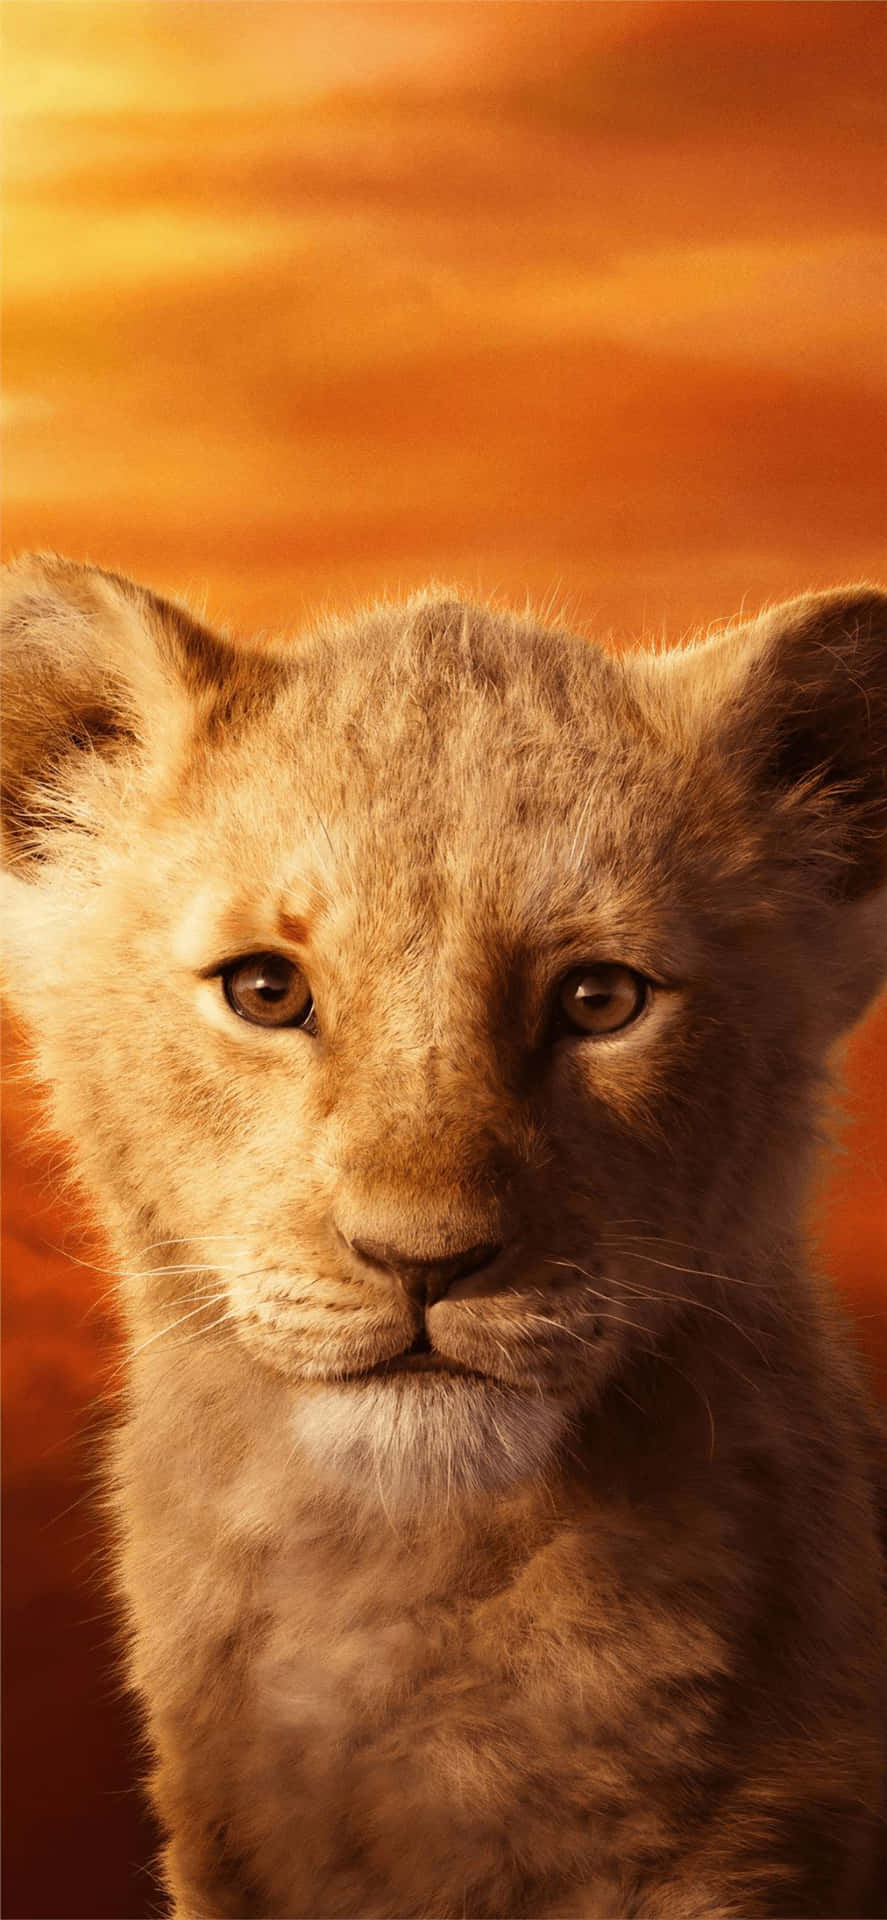 Young Lion Cub Portrait Wallpaper